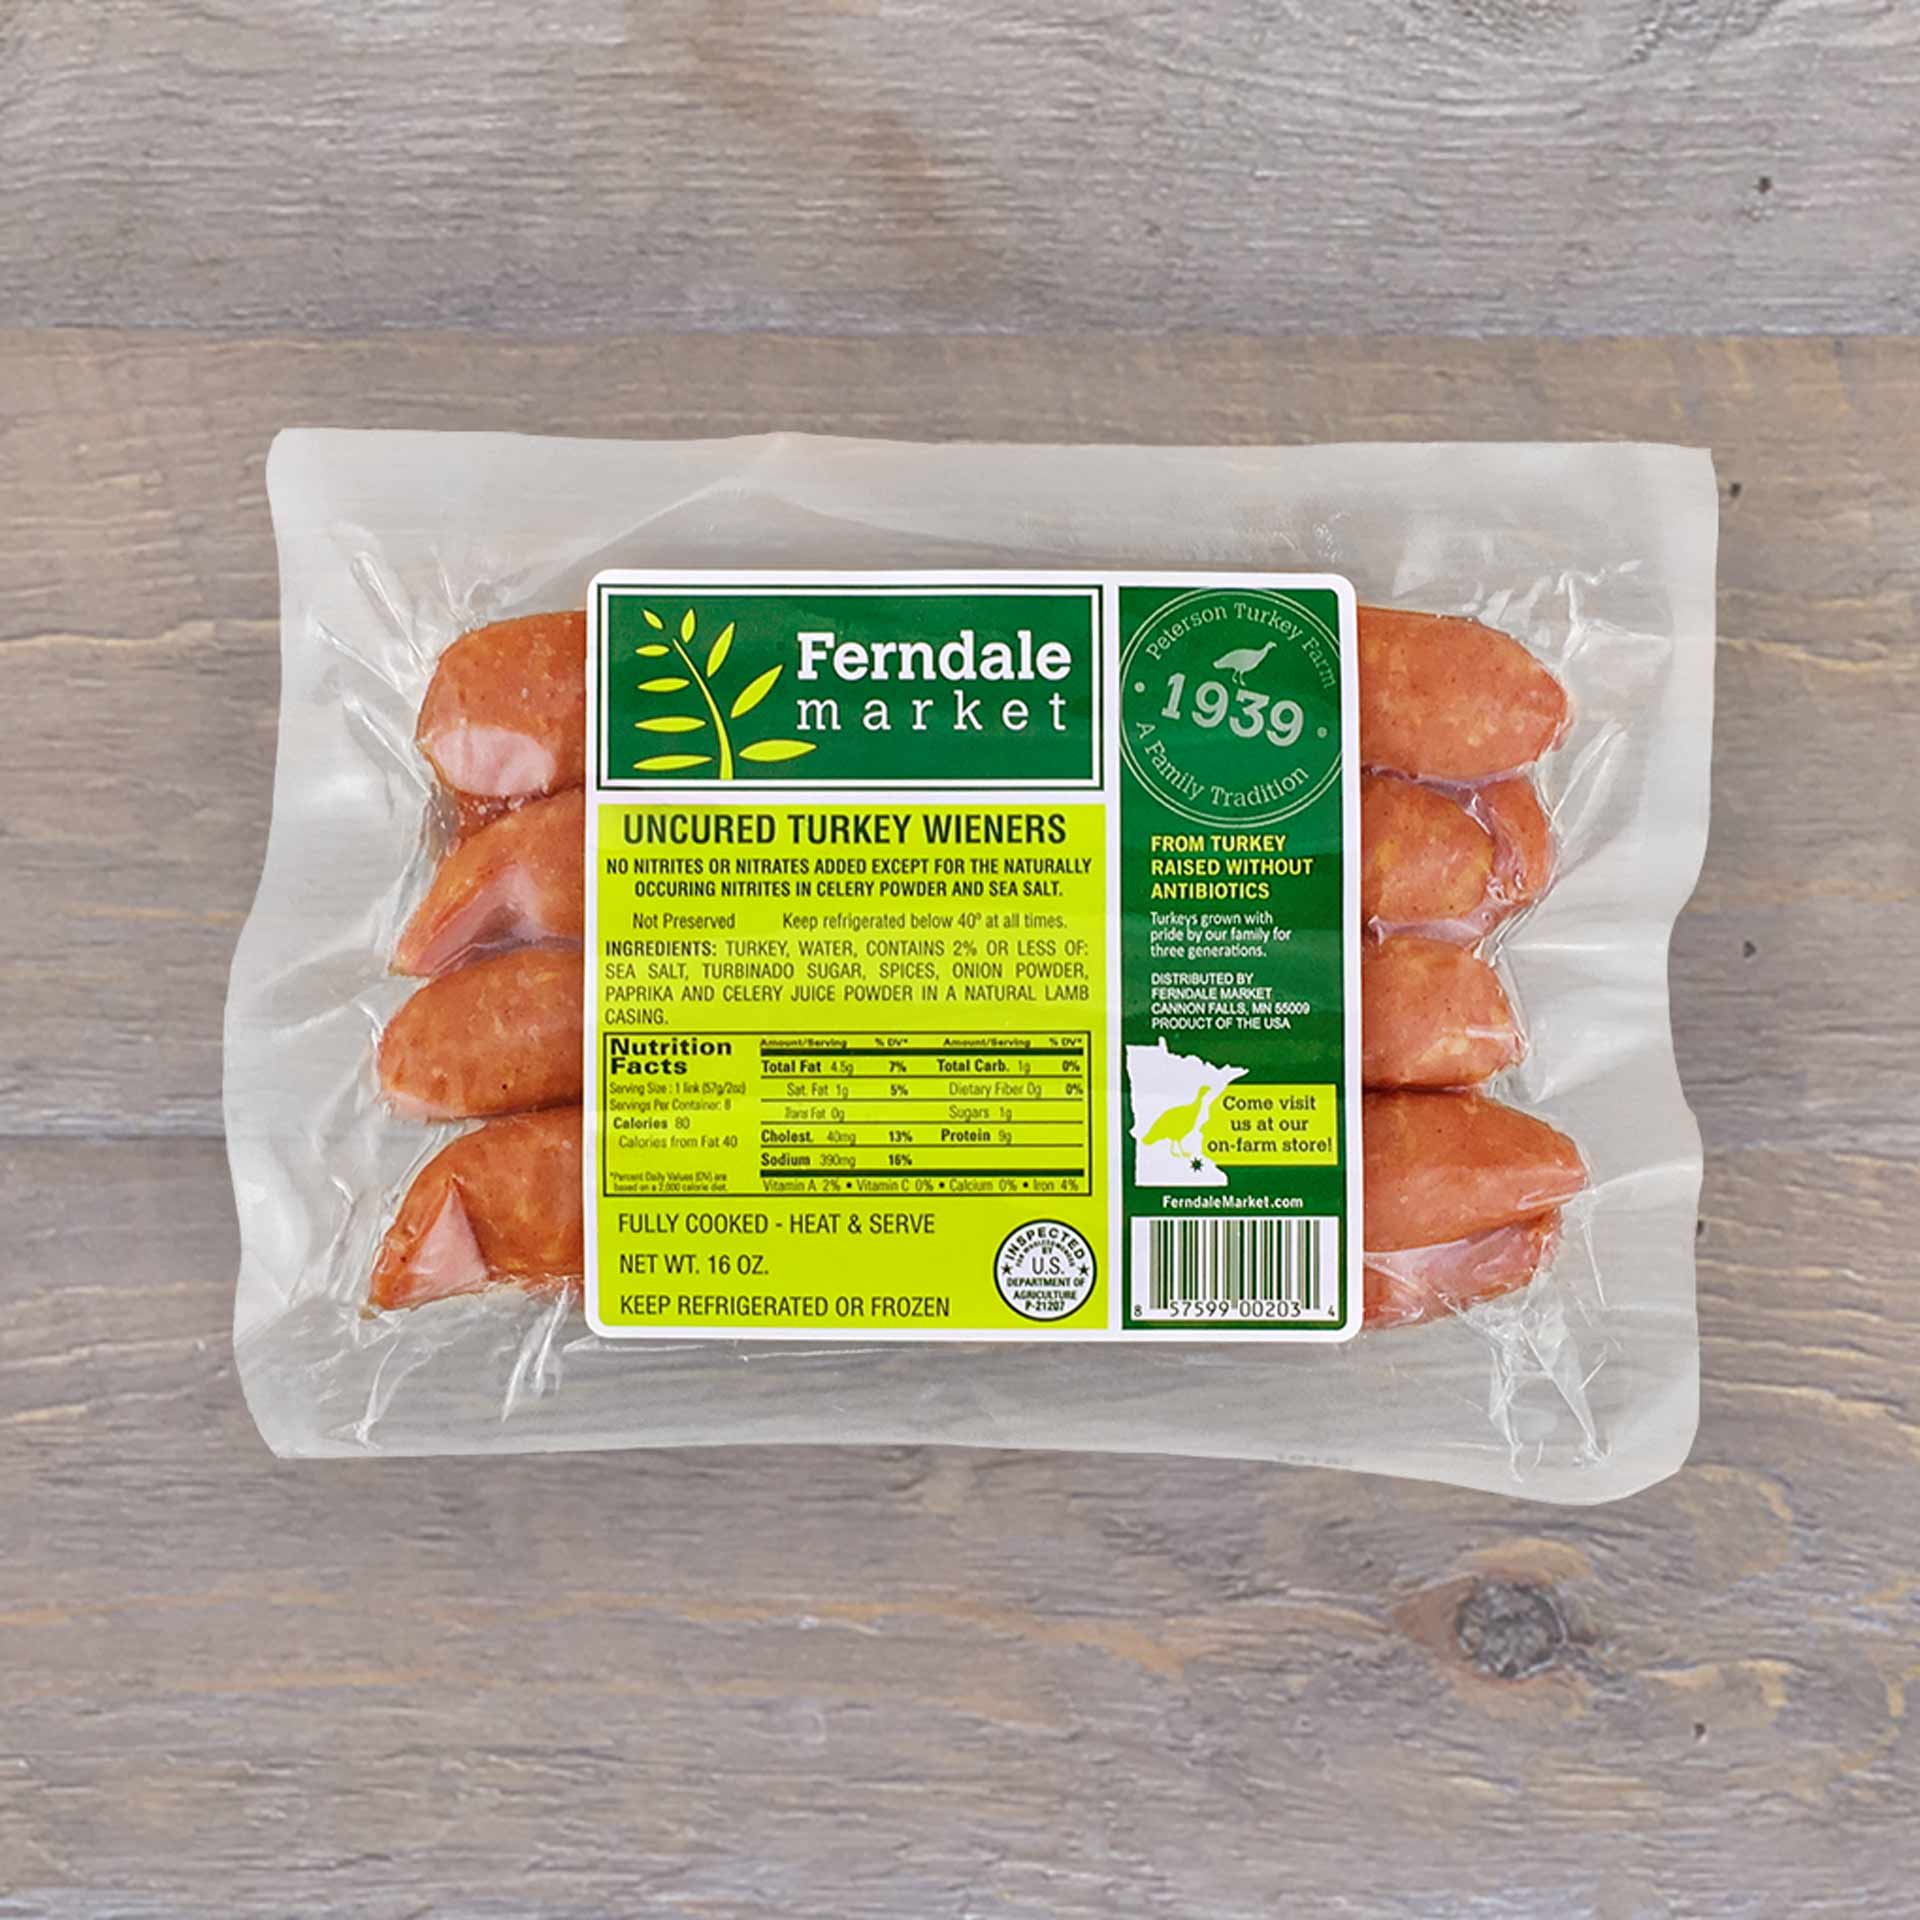 https://ferndalemarket.com/wp-content/uploads/2020/03/uncured-turkey-wieners-ferndale-market.jpg